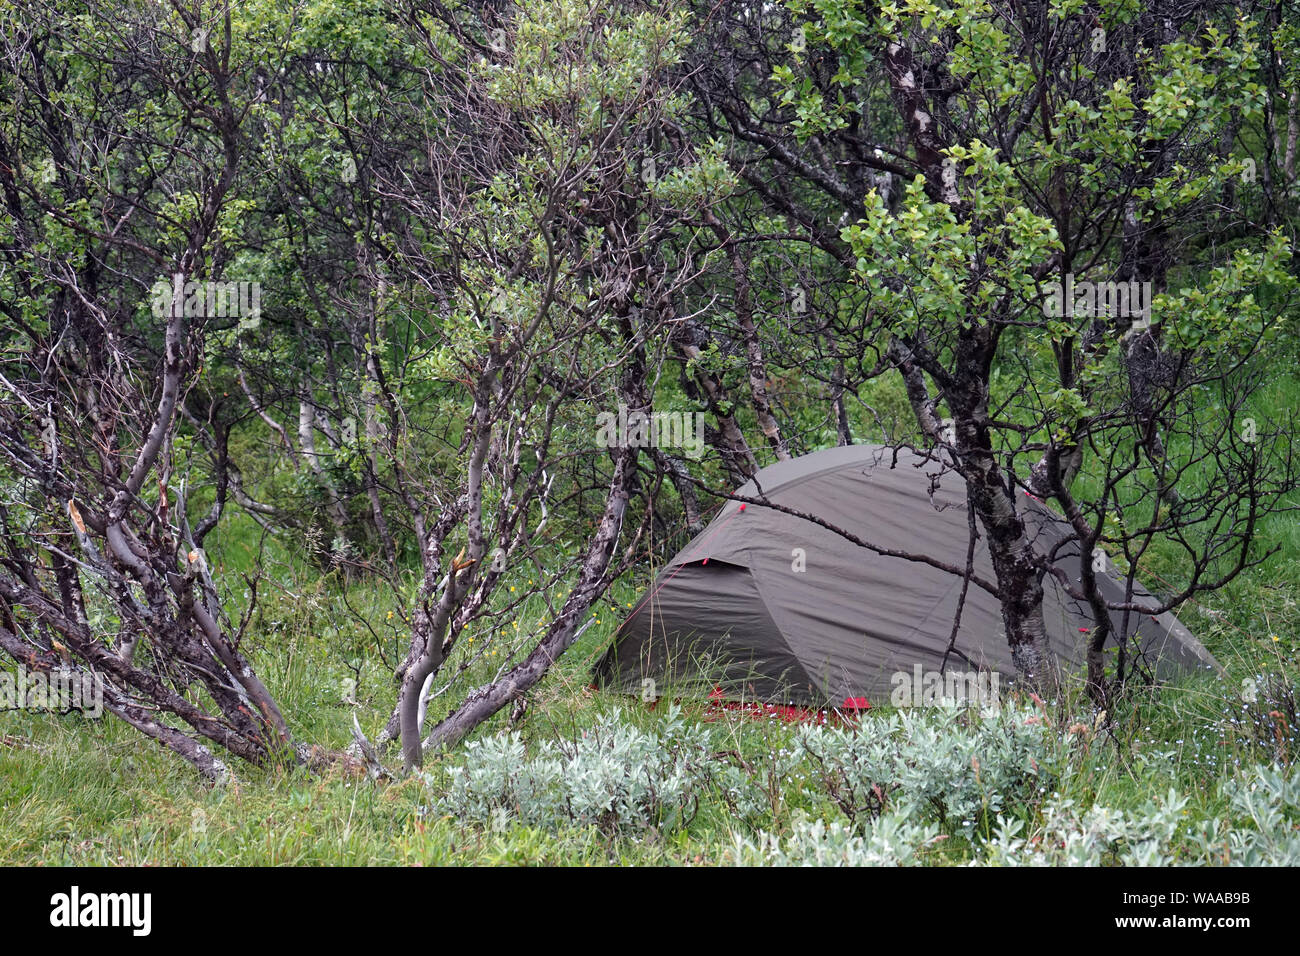 Tente en forêt en Norvège Banque D'Images